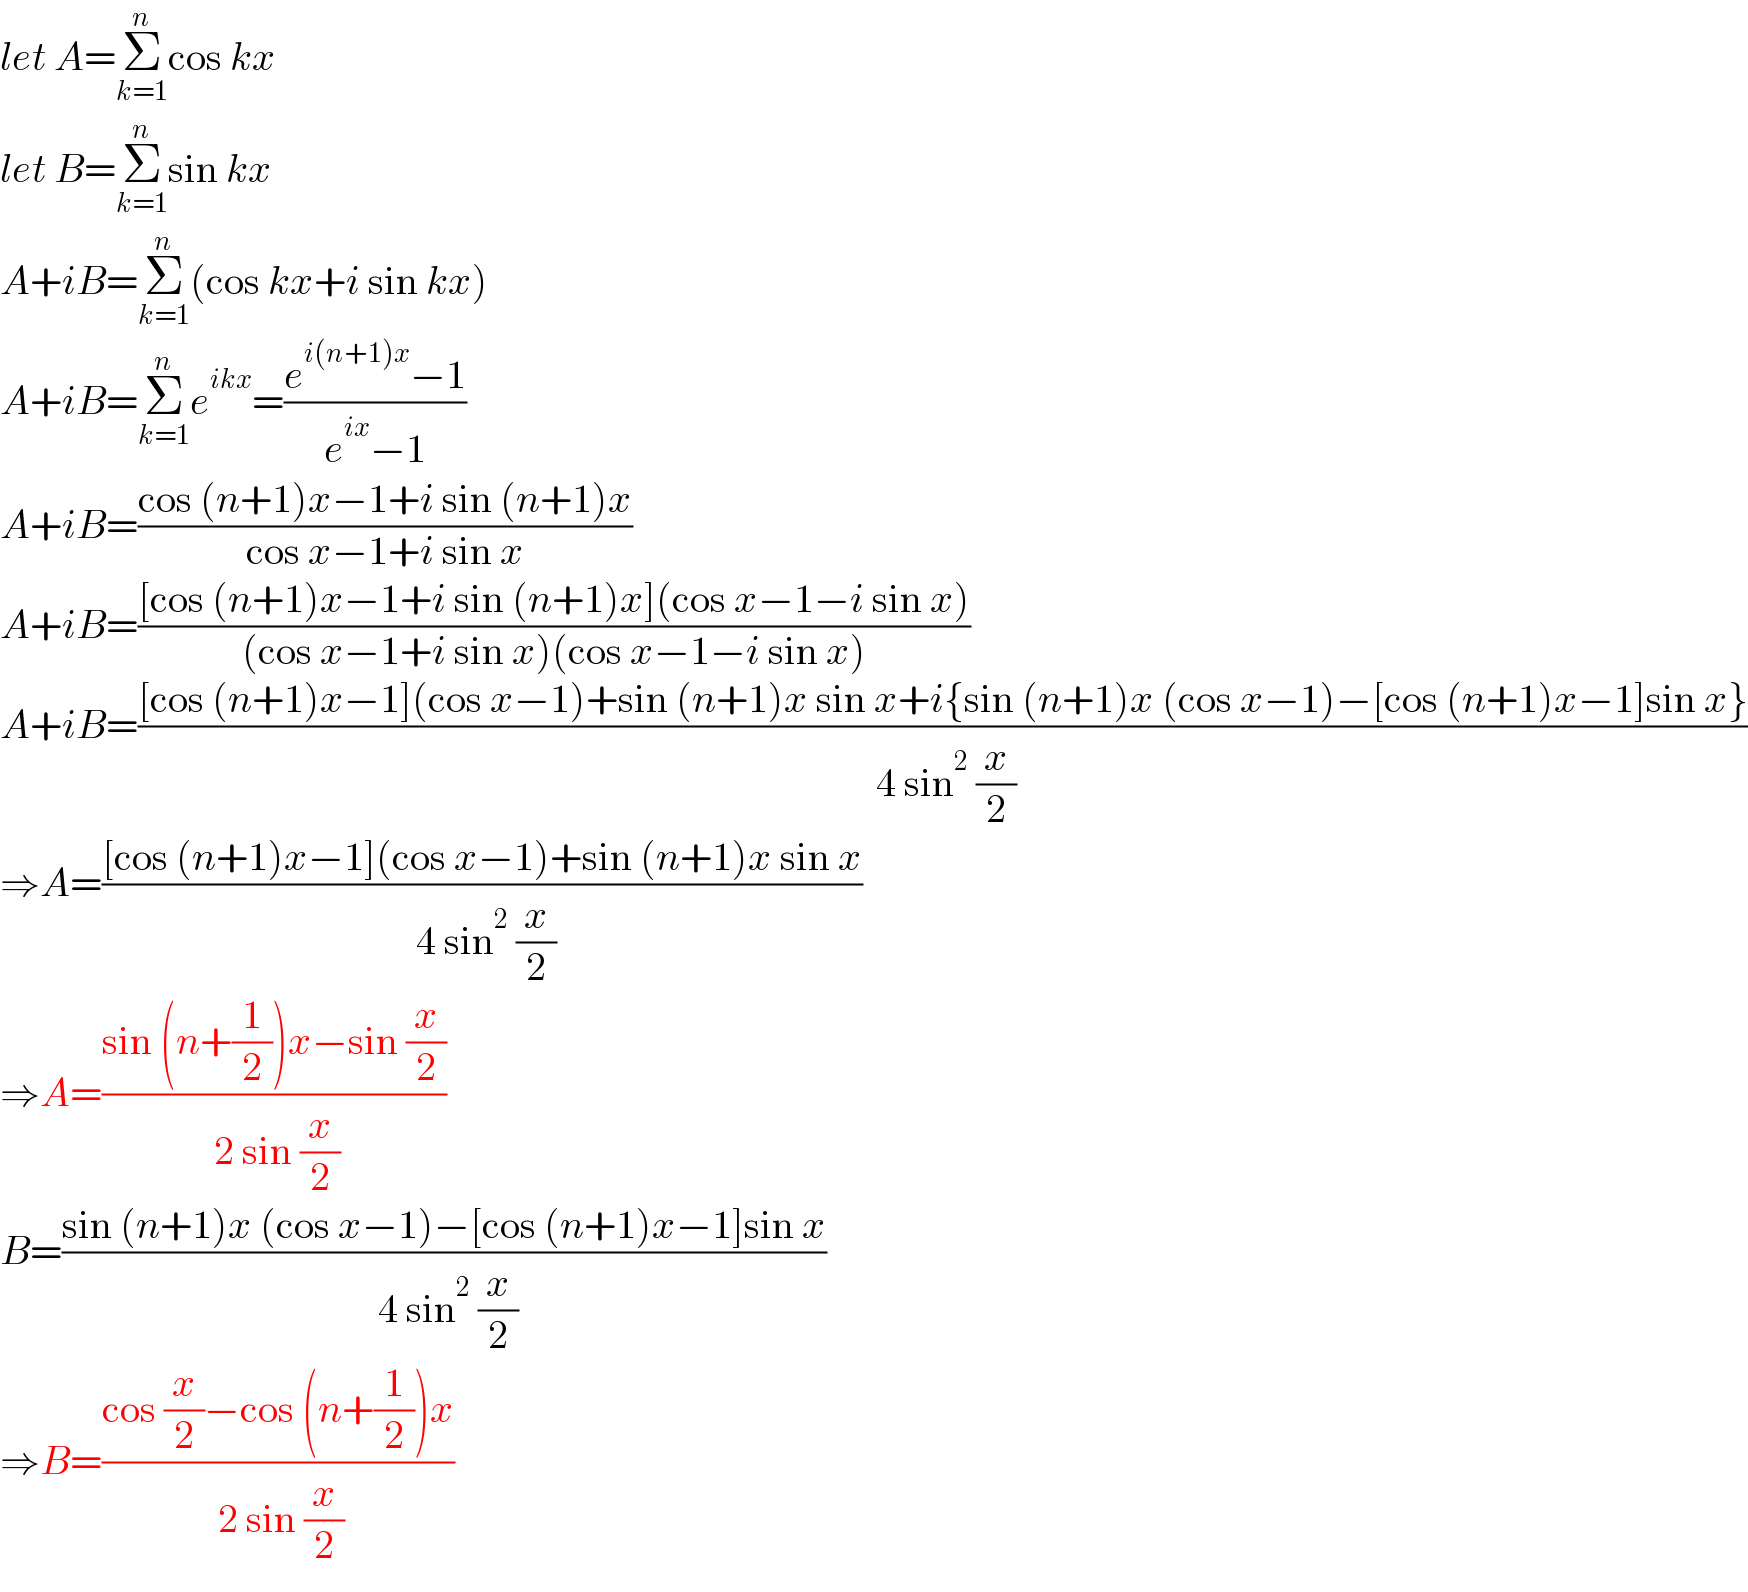 let A=Σ_(k=1) ^n cos kx  let B=Σ_(k=1) ^n sin kx  A+iB=Σ_(k=1) ^n (cos kx+i sin kx)  A+iB=Σ_(k=1) ^n e^(ikx) =((e^(i(n+1)x) −1)/(e^(ix) −1))  A+iB=((cos (n+1)x−1+i sin (n+1)x)/(cos x−1+i sin x))  A+iB=(([cos (n+1)x−1+i sin (n+1)x](cos x−1−i sin x))/((cos x−1+i sin x)(cos x−1−i sin x)))  A+iB=(([cos (n+1)x−1](cos x−1)+sin (n+1)x sin x+i{sin (n+1)x (cos x−1)−[cos (n+1)x−1]sin x})/( 4 sin^2  (x/2)))  ⇒A=(([cos (n+1)x−1](cos x−1)+sin (n+1)x sin x)/( 4 sin^2  (x/2)))  ⇒A=((sin (n+(1/2))x−sin (x/2))/( 2 sin (x/2)))  B=((sin (n+1)x (cos x−1)−[cos (n+1)x−1]sin x)/( 4 sin^2  (x/2)))  ⇒B=((cos (x/2)−cos (n+(1/2))x)/( 2 sin (x/2)))  